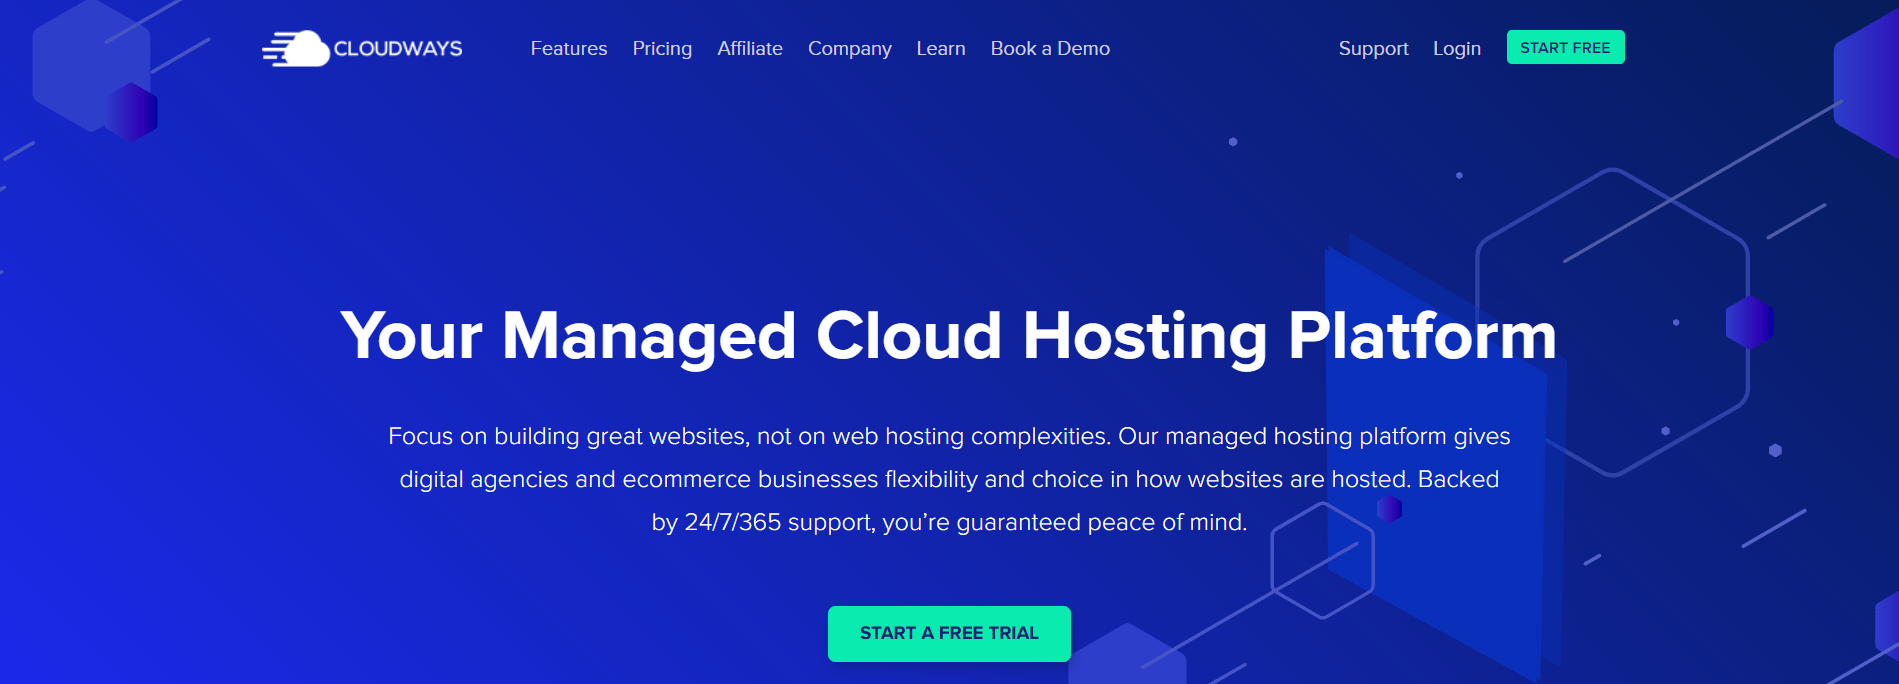 Malta-based web hosting